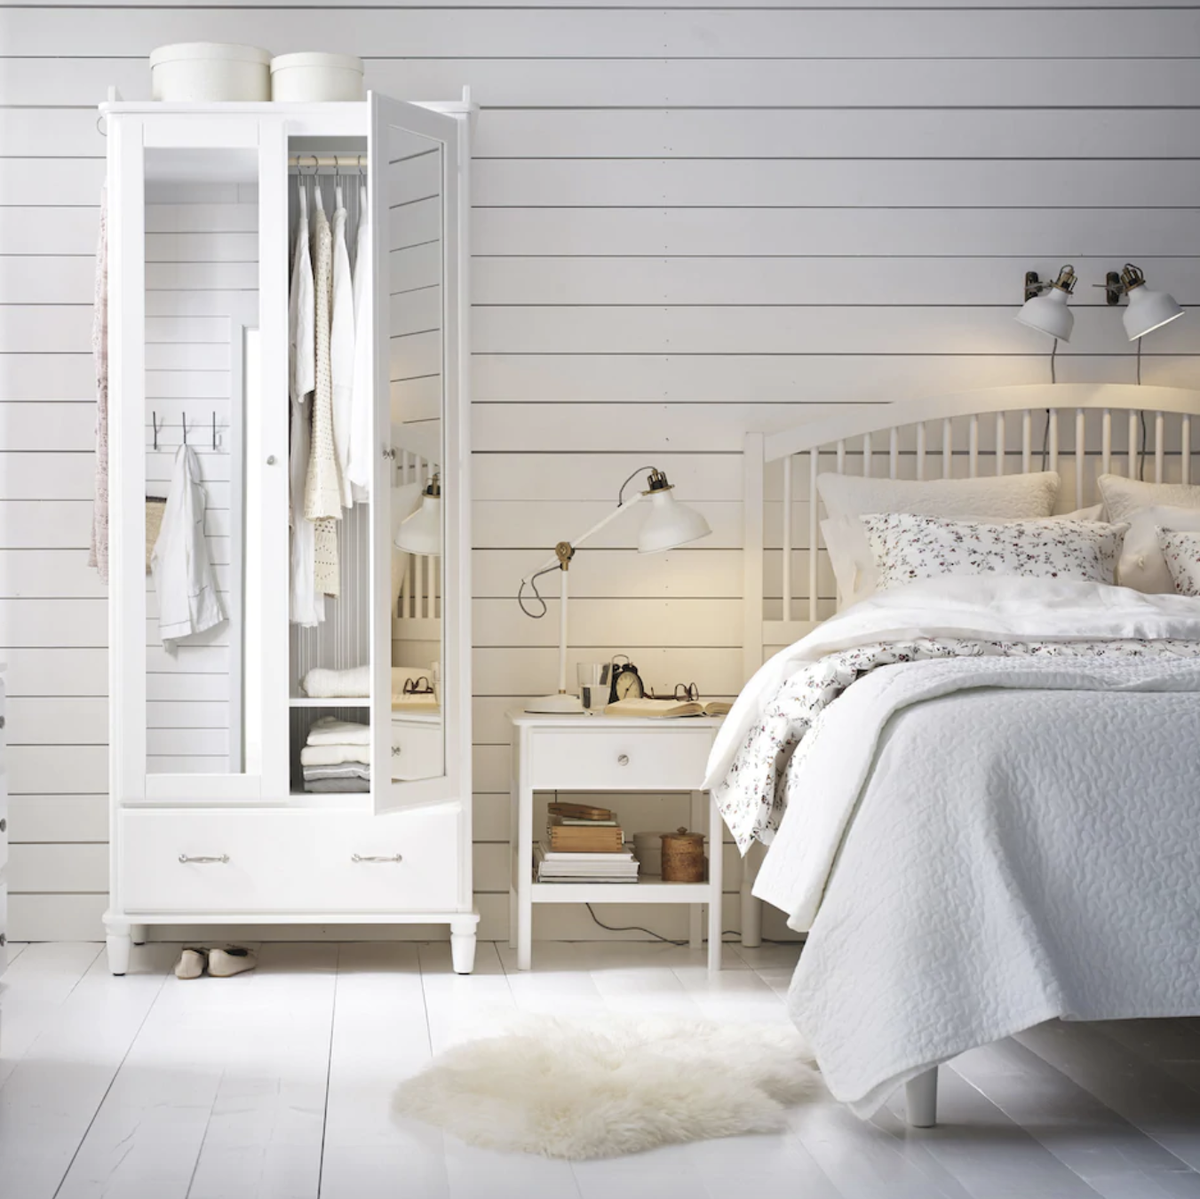 Tener un dormitorio chic no es sinónimo de despilfarre-Buenas ideas de en IKEA